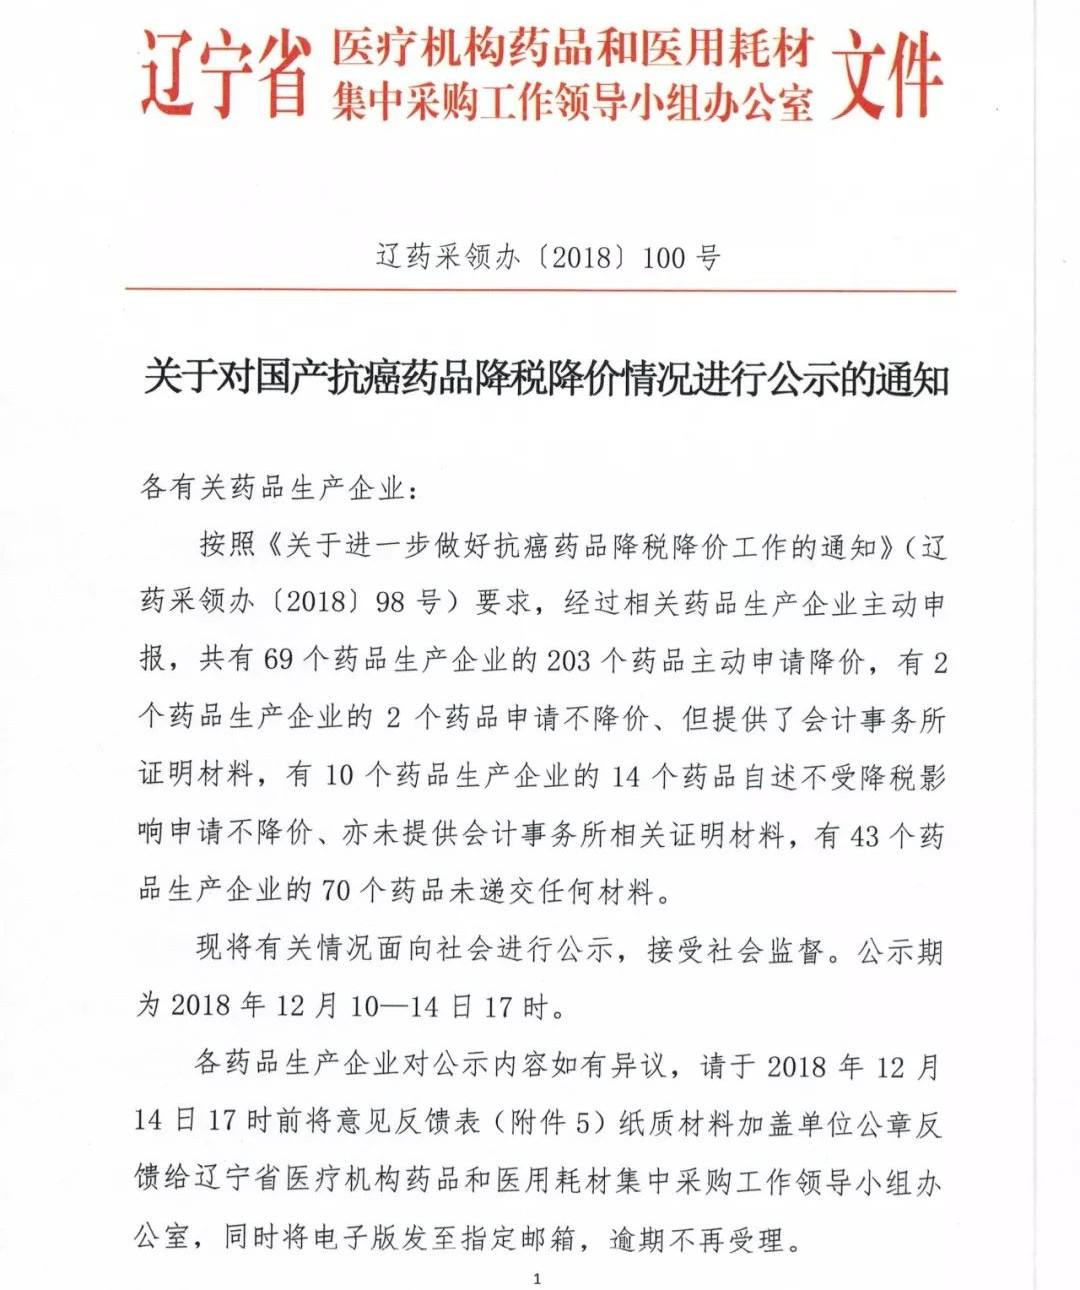 辽宁省发通知 203个抗癌药降价 84个抗癌药或暂停采购。 